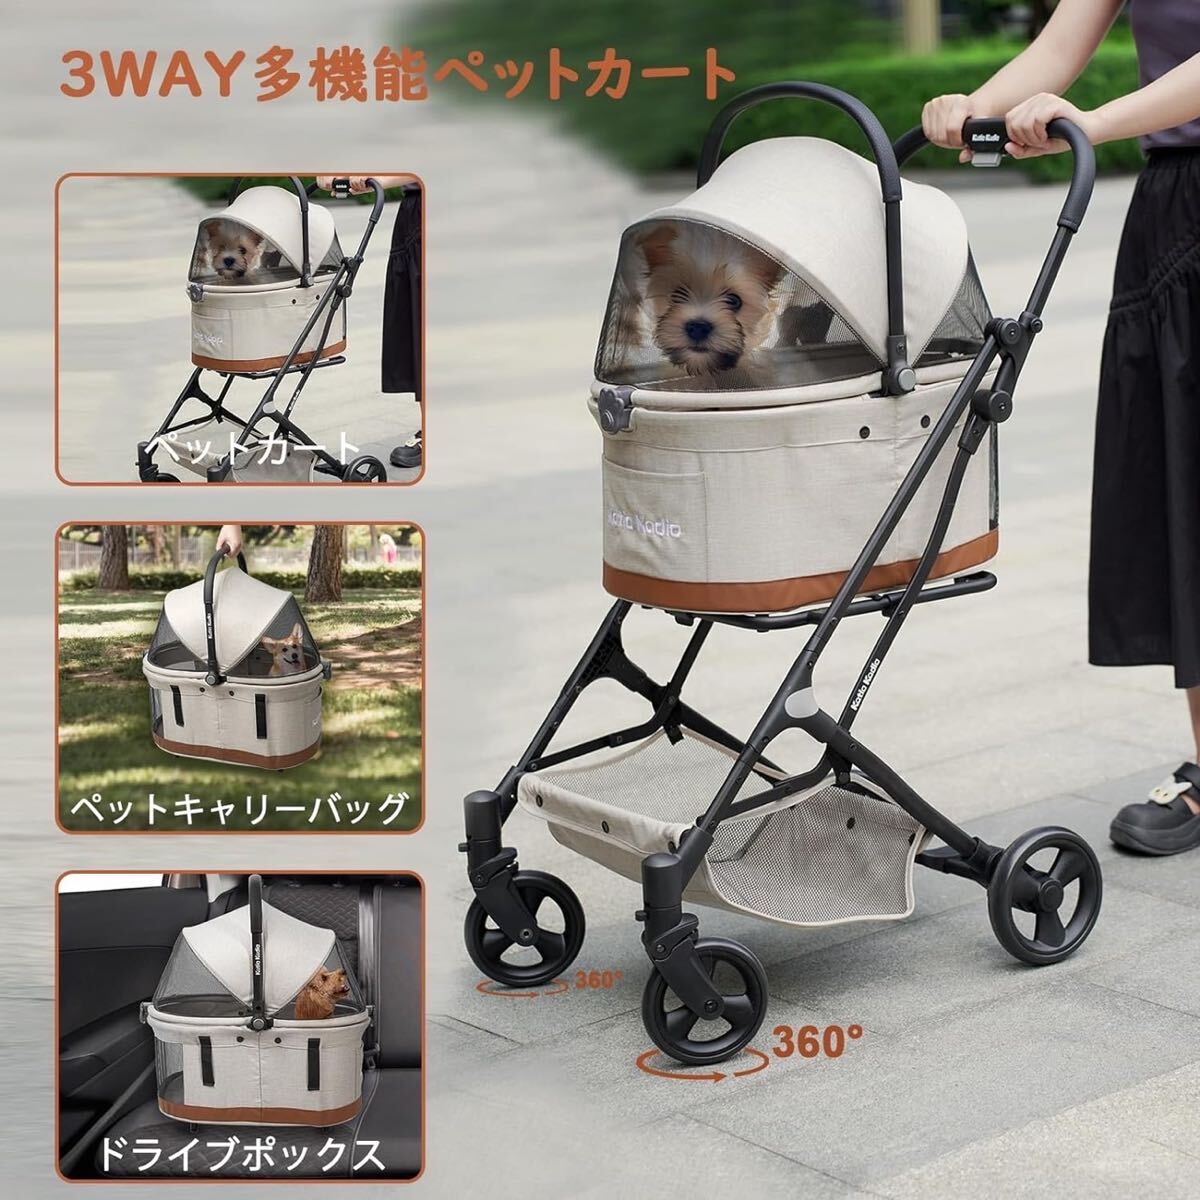 [. Special SALE средний!] домашнее животное Cart коляска разъемная модель складной прогулка собака кошка домашнее животное Carry бежевый симпатичный модный новый товар в коробке 